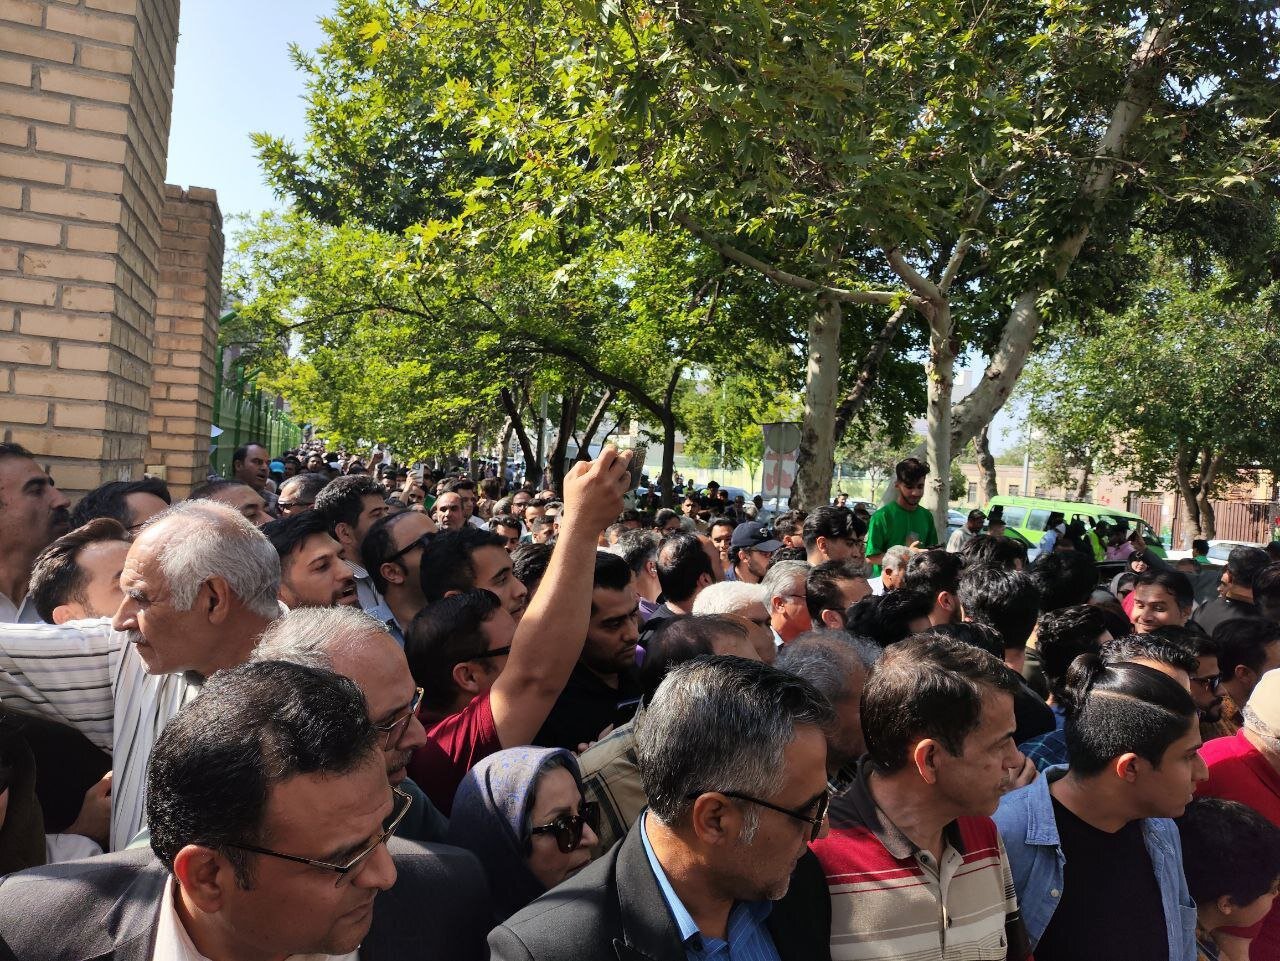 موج مردمی در مشهد برای سخنرانی محمد جواد ظریف/ مردم پشت درهای  بسته ماندند+ تصاویر